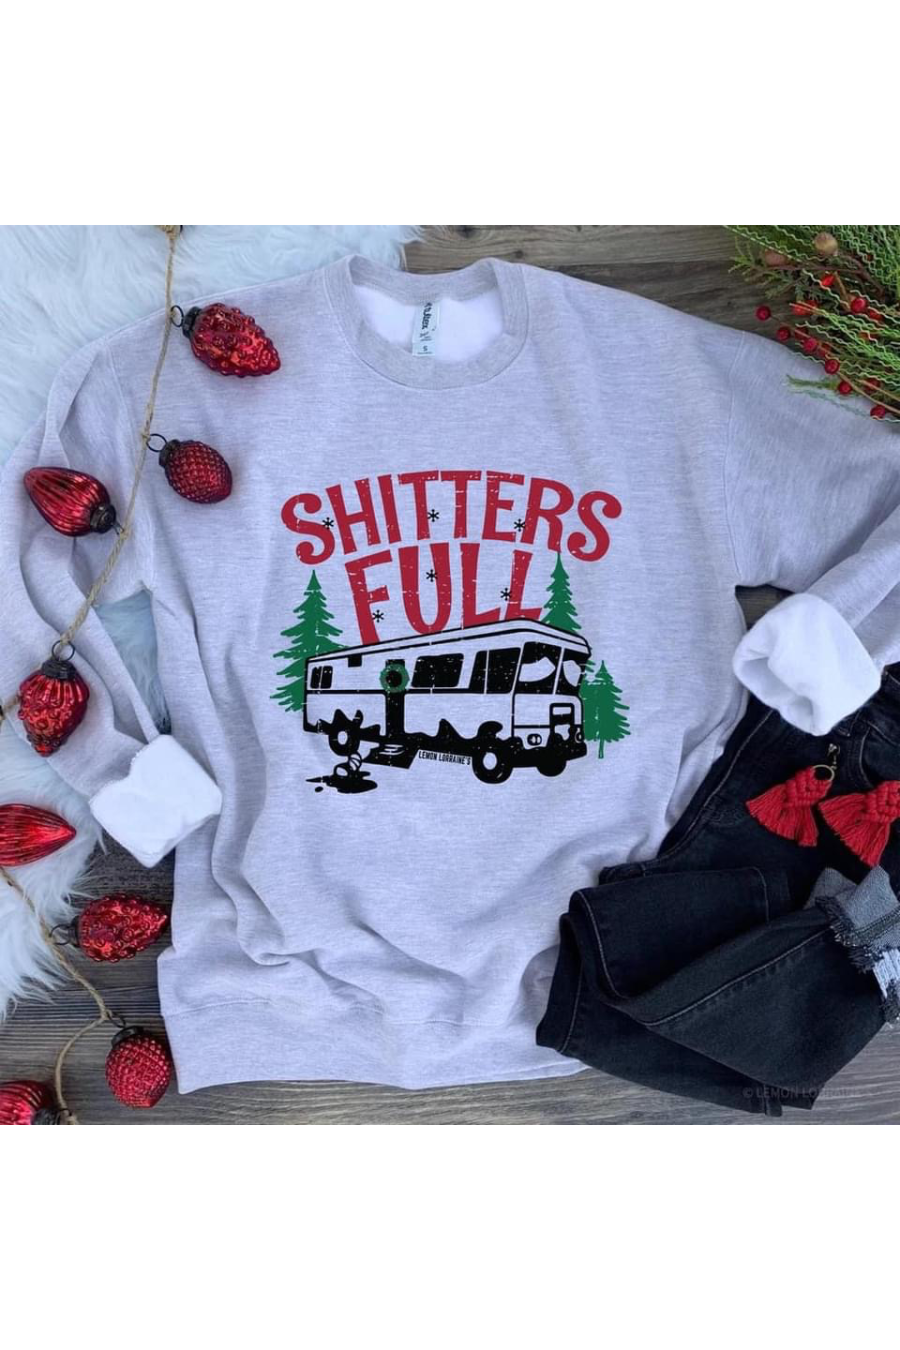 Shitters Full Sweatshirt, Gray